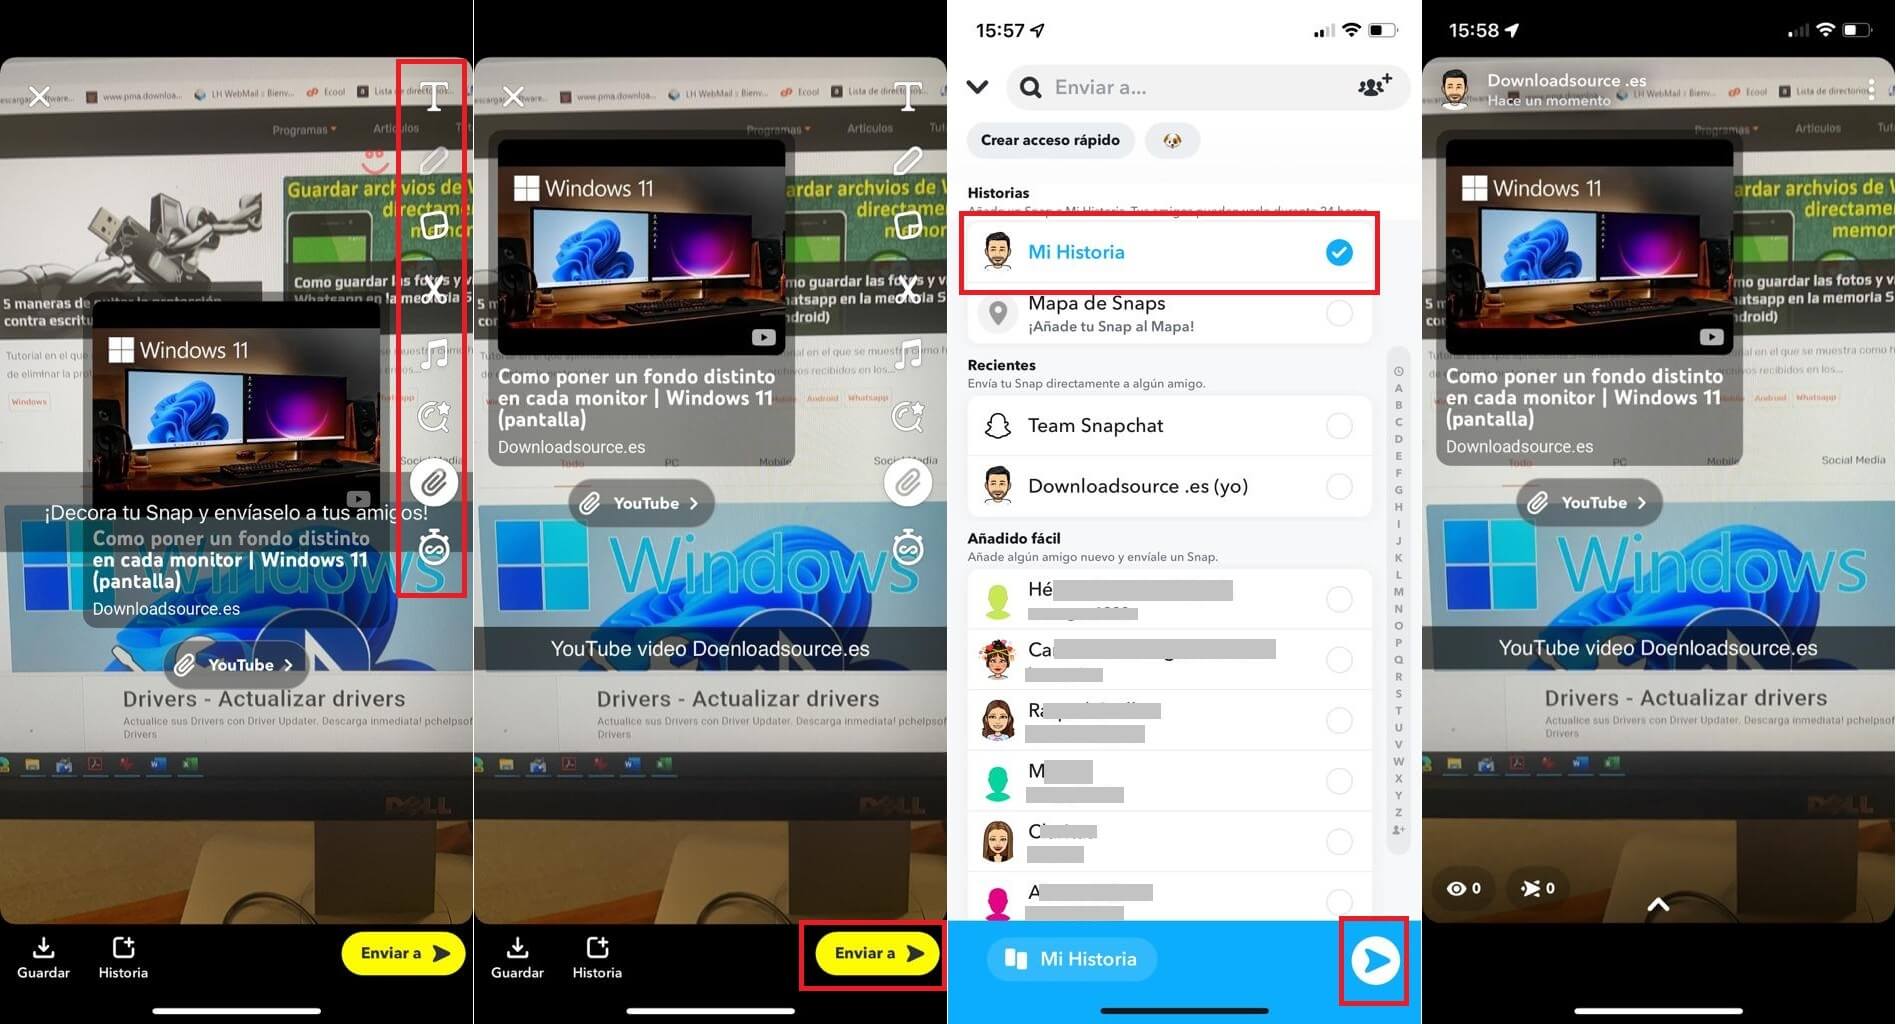 snapchat te permite publicar videos de Youtube en tus historias